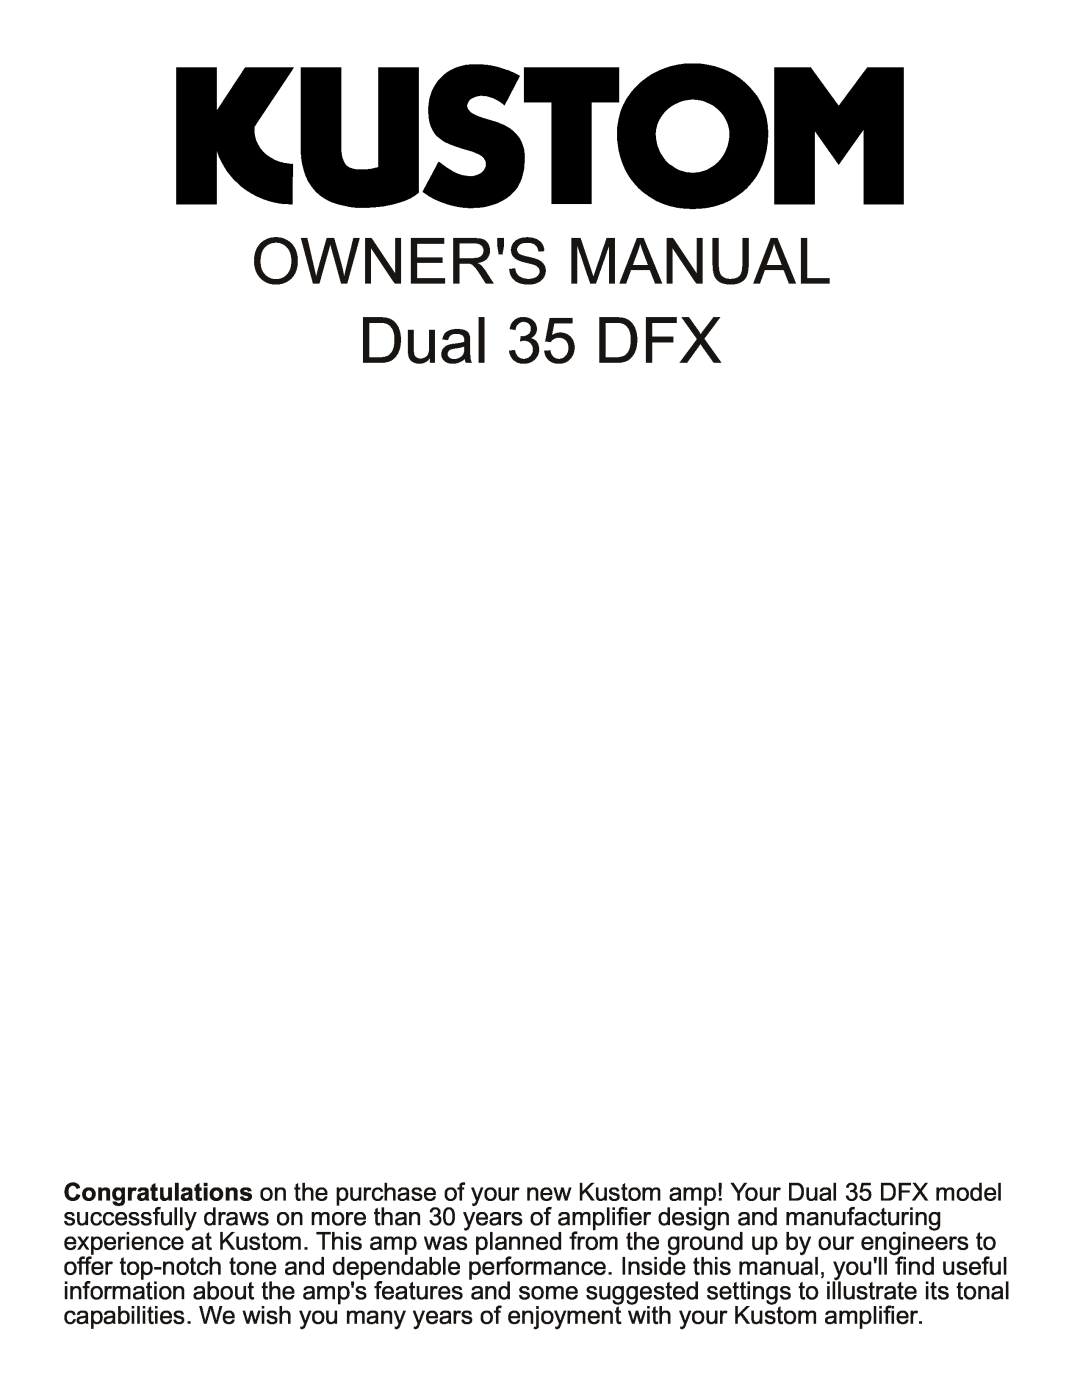 Kustom Dual 35 DFX owner manual 